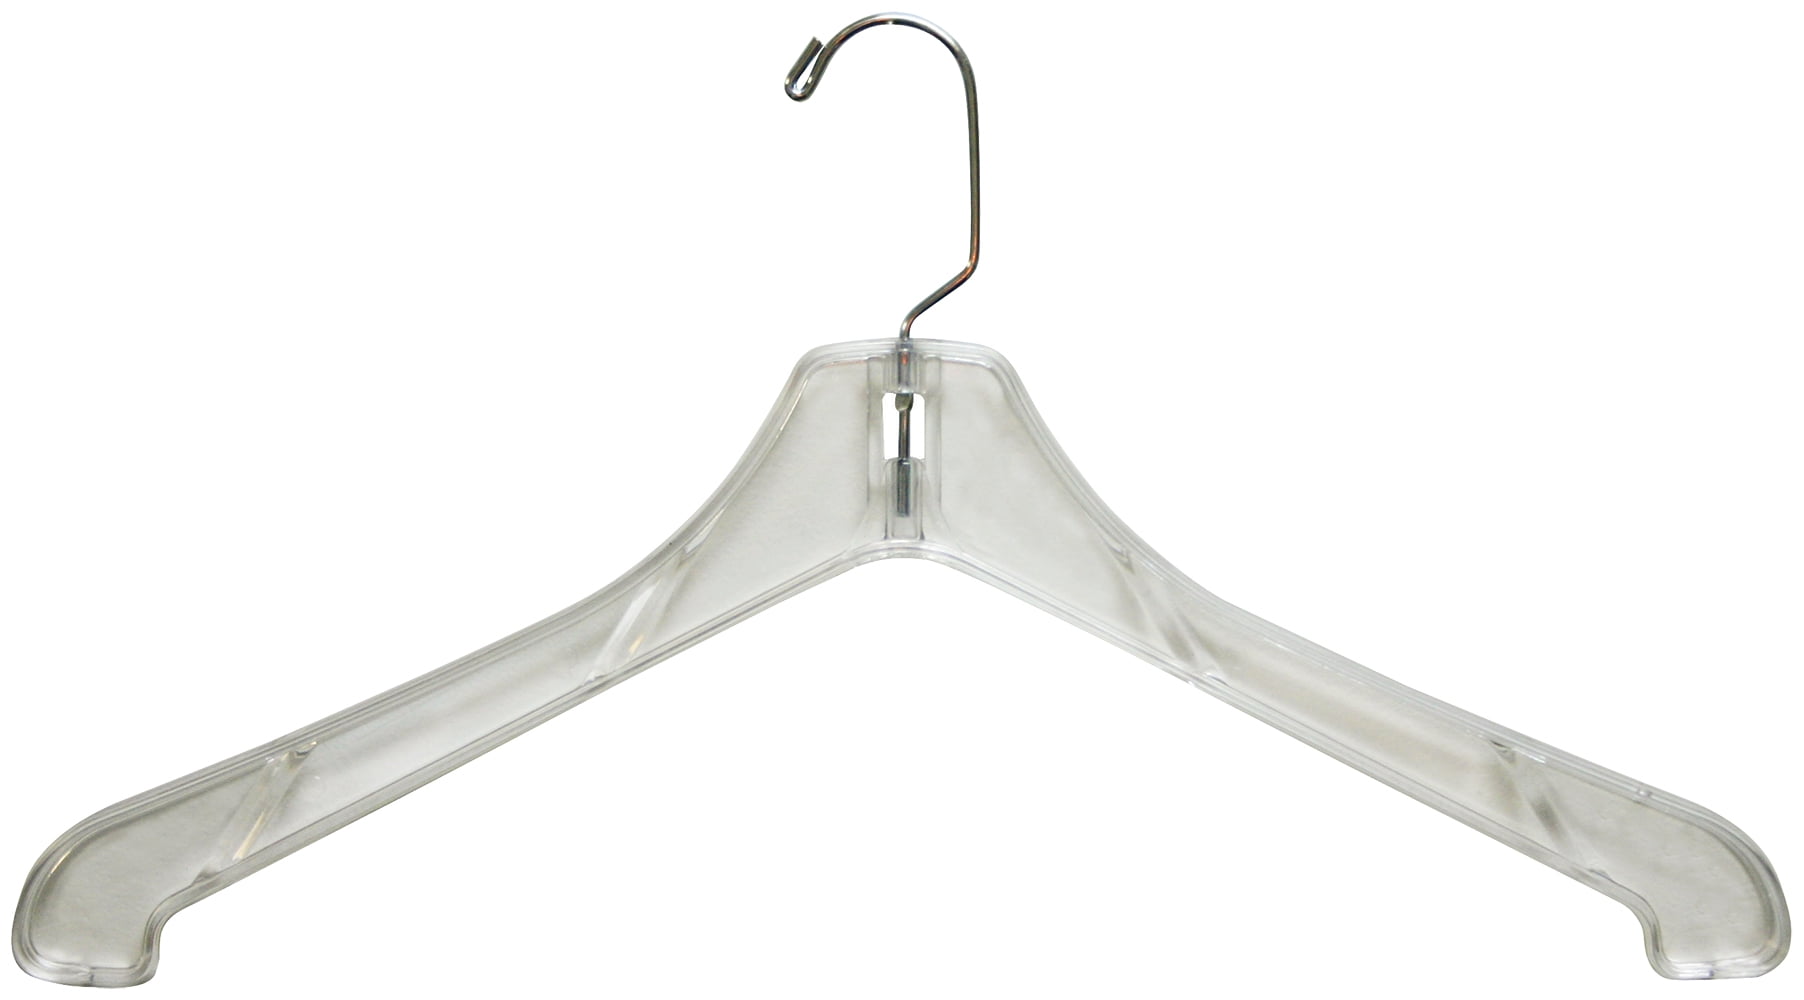 Plastic Coat Hangers